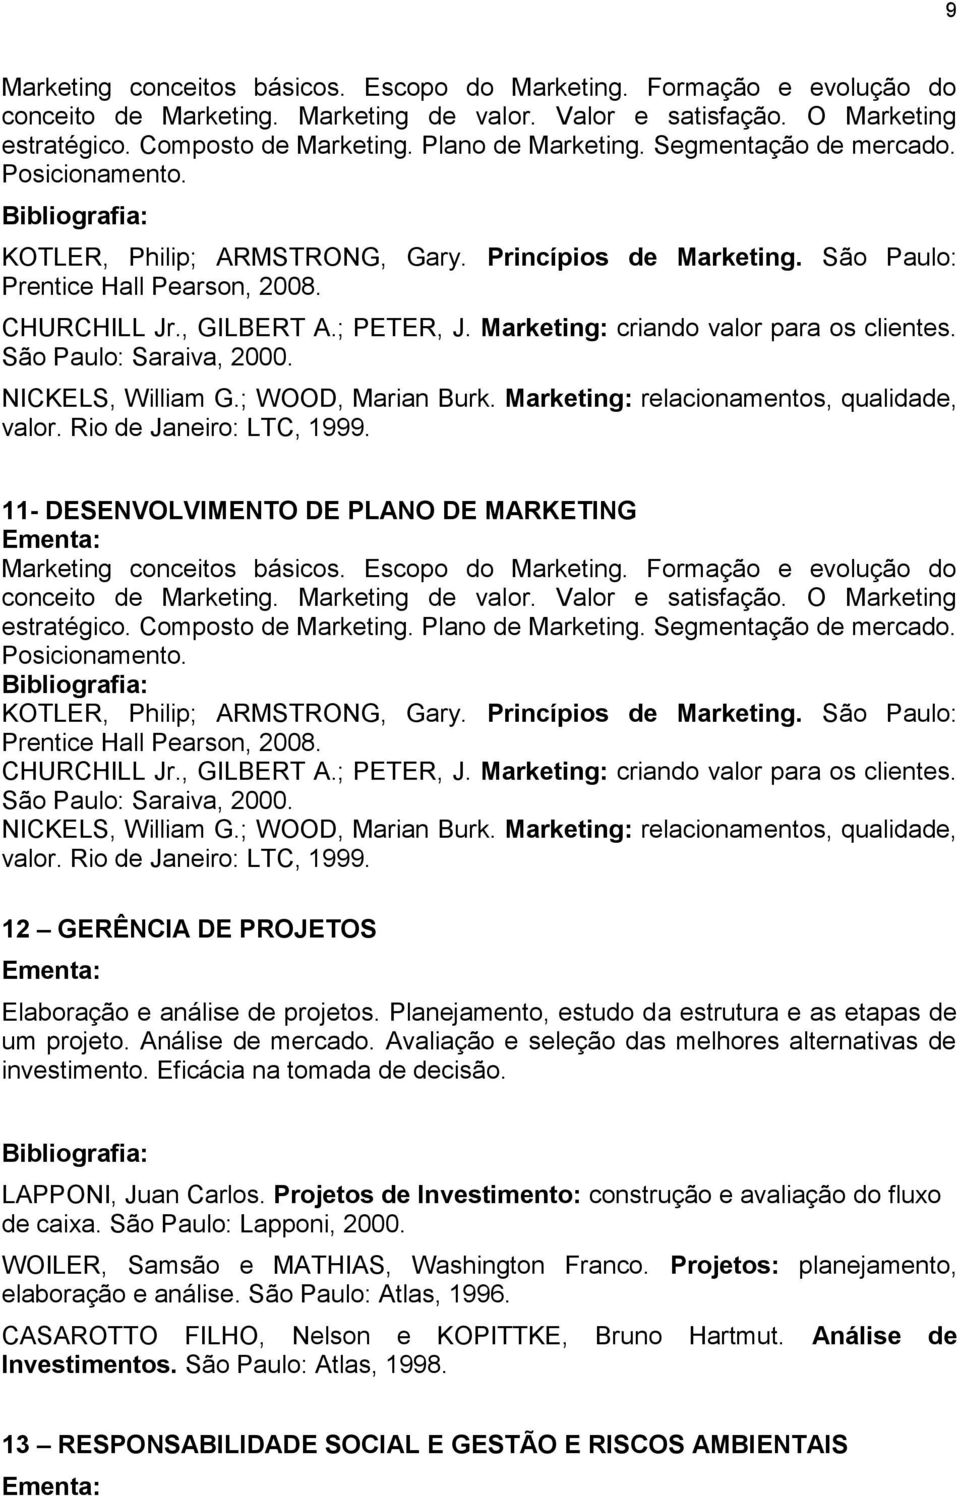 Marketing: criando valor para os clientes. São Paulo: Saraiva, 2000. NICKELS, William G.; WOOD, Marian Burk. Marketing: relacionamentos, qualidade, valor. Rio de Janeiro: LTC, 1999.